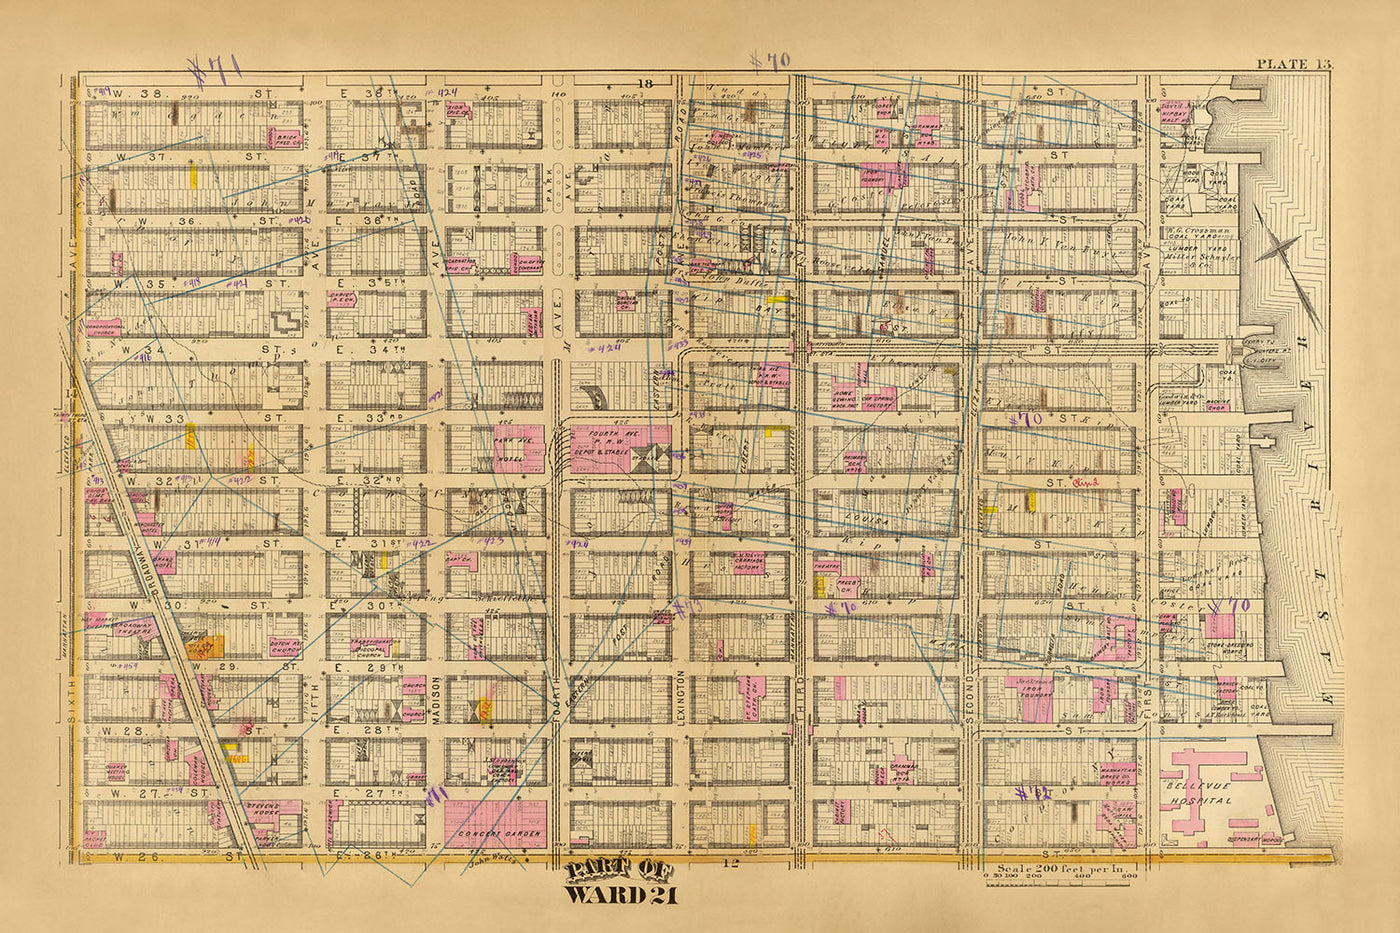 Ancienne carte du quartier 21, New York par Bromley, 1879 : hôpital Bellevue, Concert Garden et 33rd Street Station.